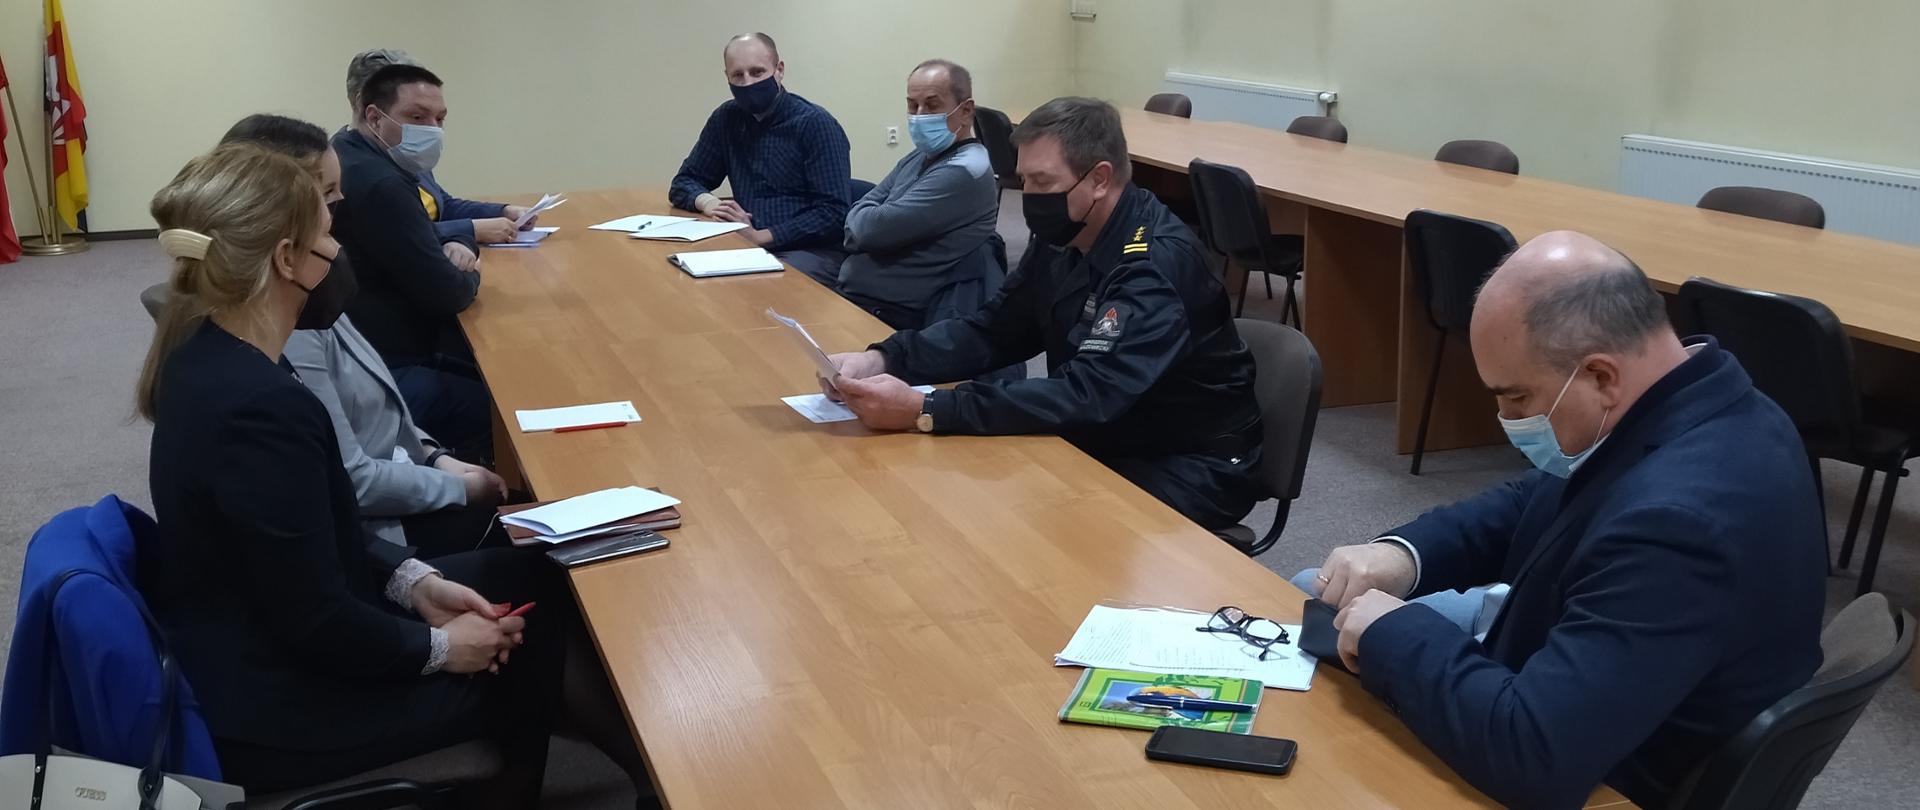 Przy stole siedzą przedstawiciele władz powiatowych i gminnych oraz komendant powiatowy PSP w Grodzisku Mazowieckim omawiający sprawy przygotowania samorządów oraz jednostek krajowego systemu ratowniczo-gaśniczego do działań w okresie zimowym 2021/2022.